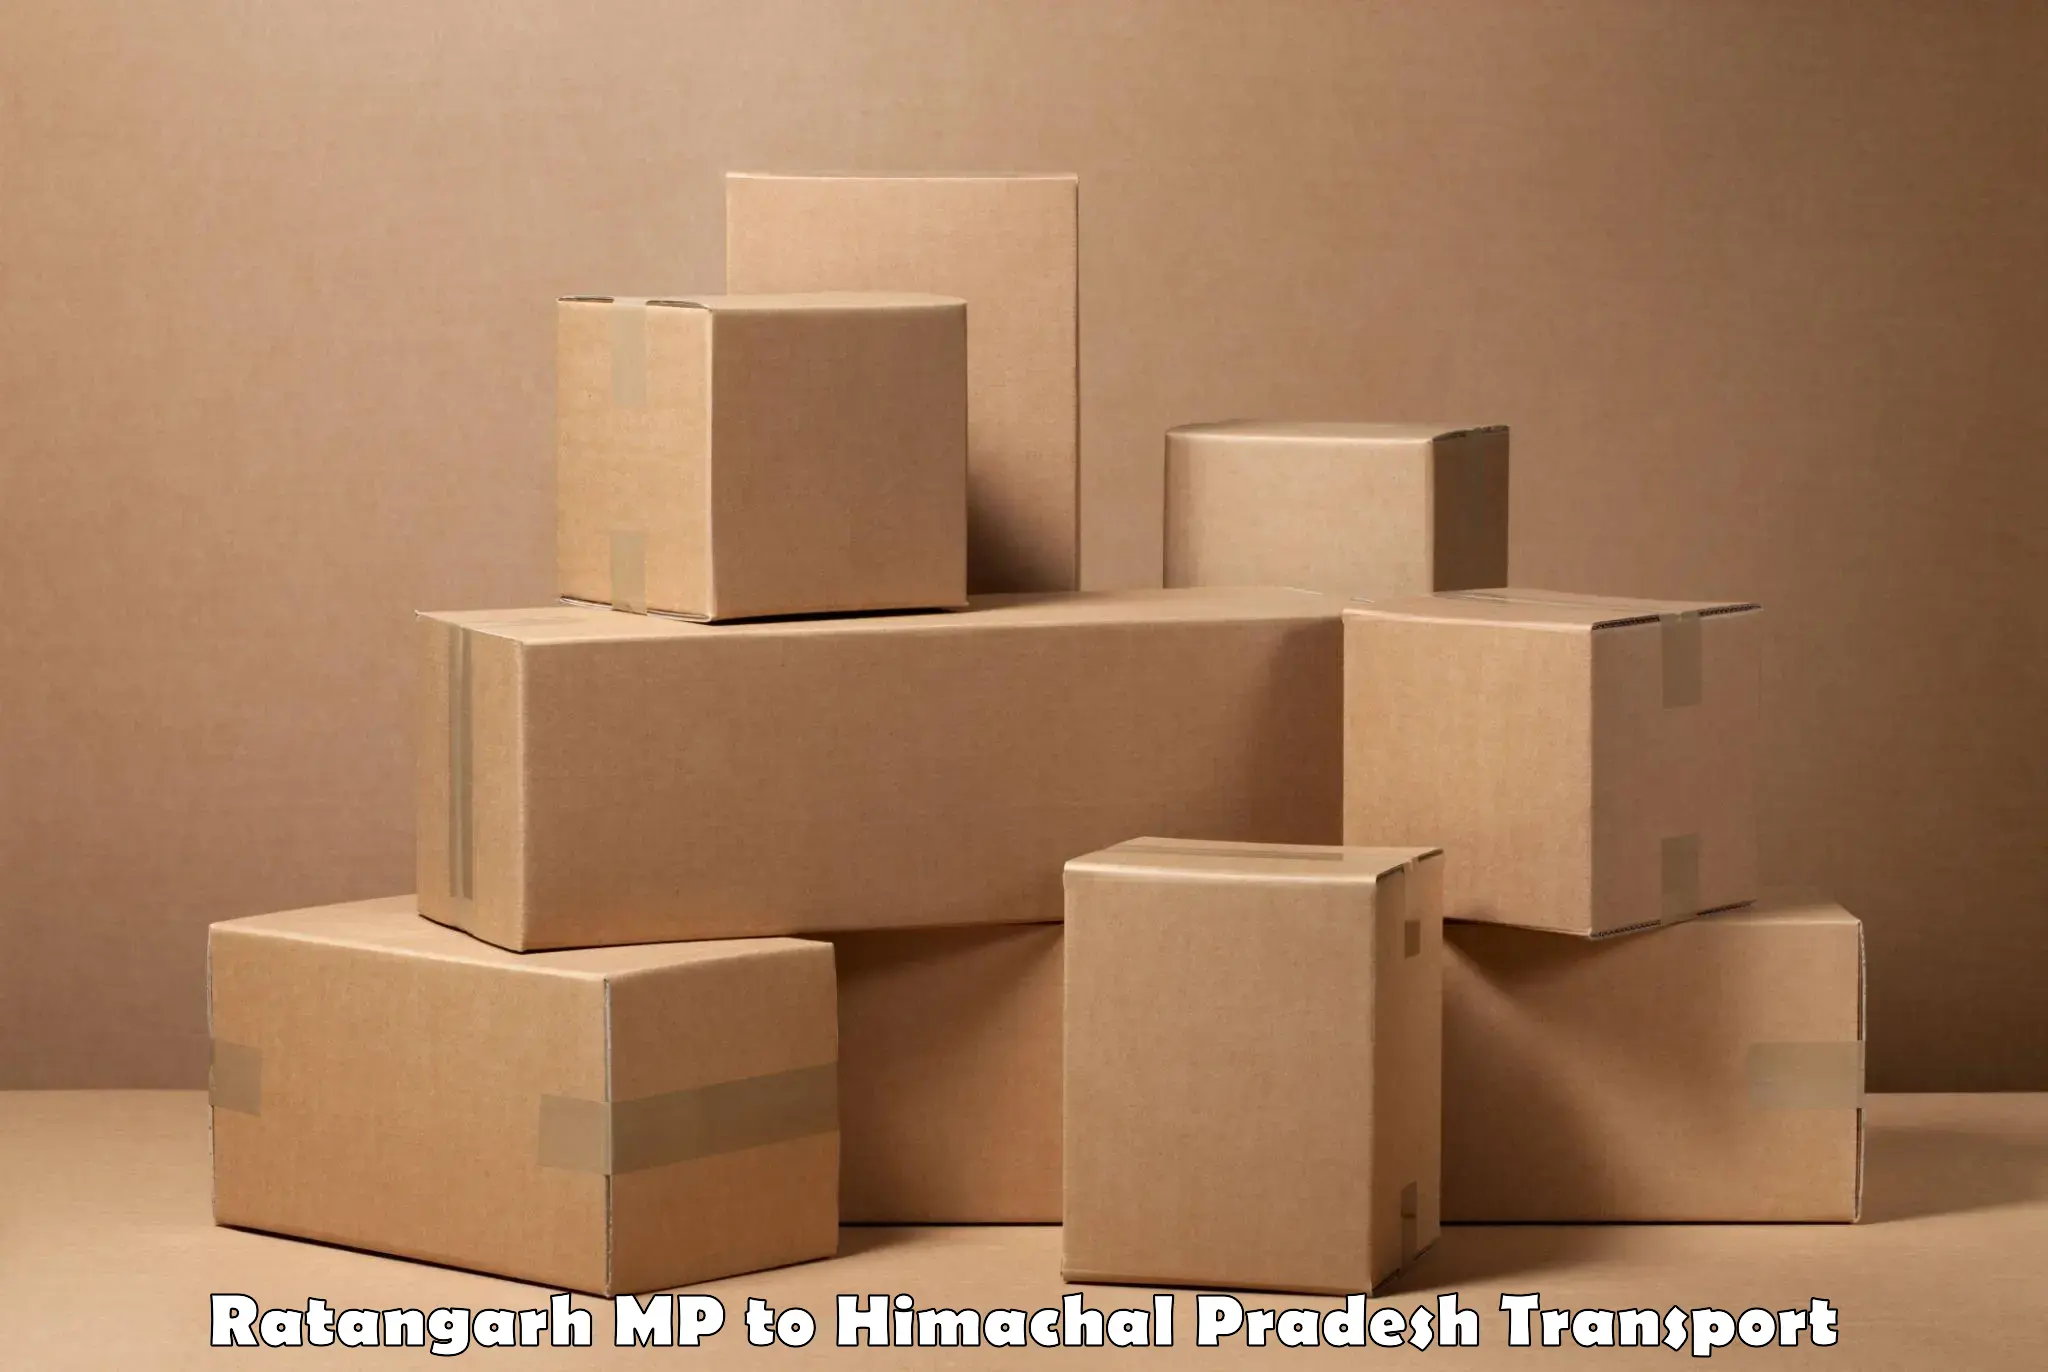 Shipping partner Ratangarh MP to Nerwa